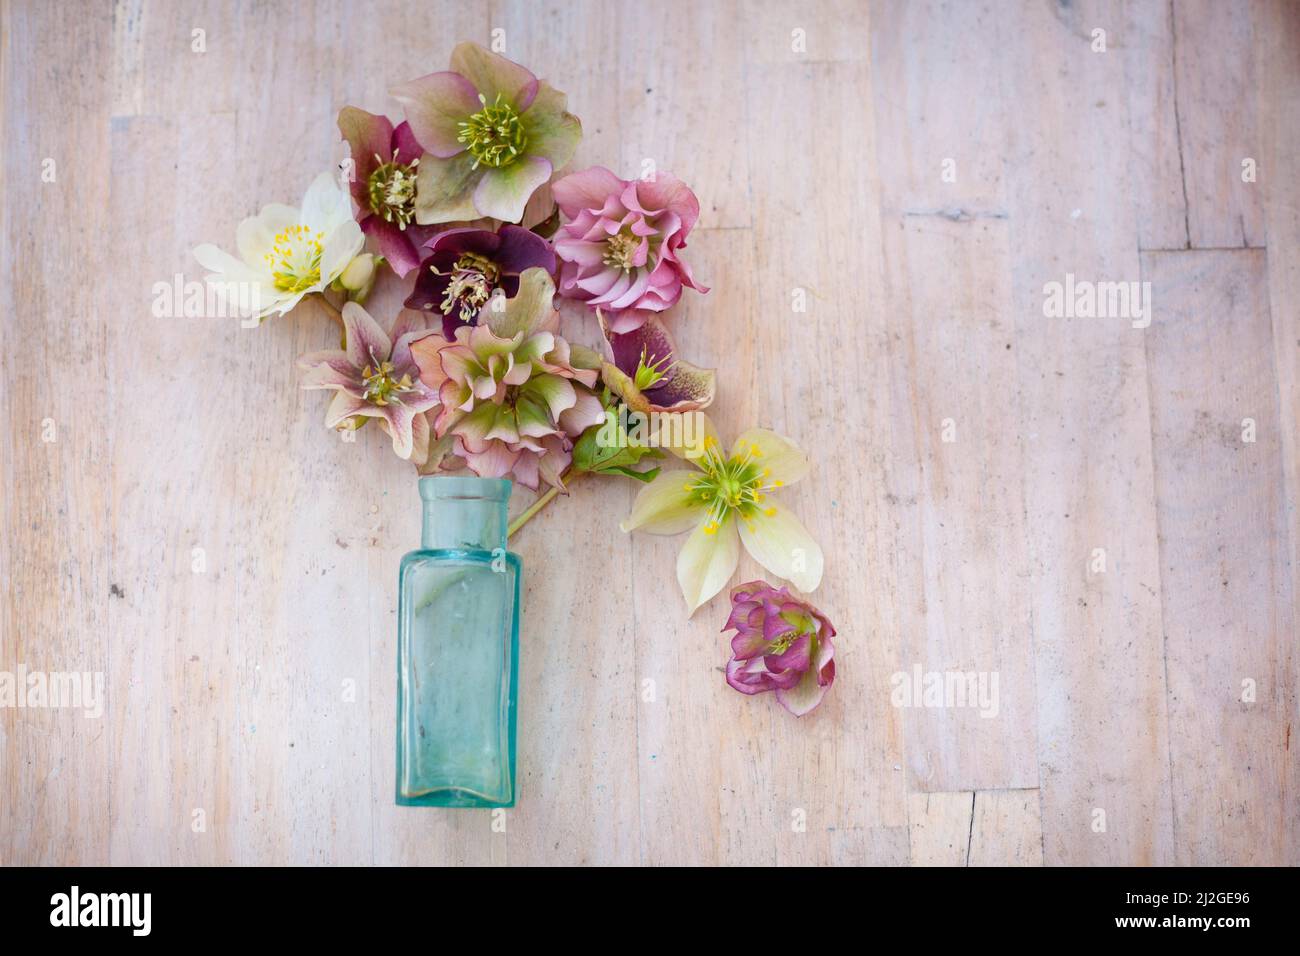 composizione floreale con bottiglia d'annata blu, fiori rosa e bianchi su tavola di legno Foto Stock